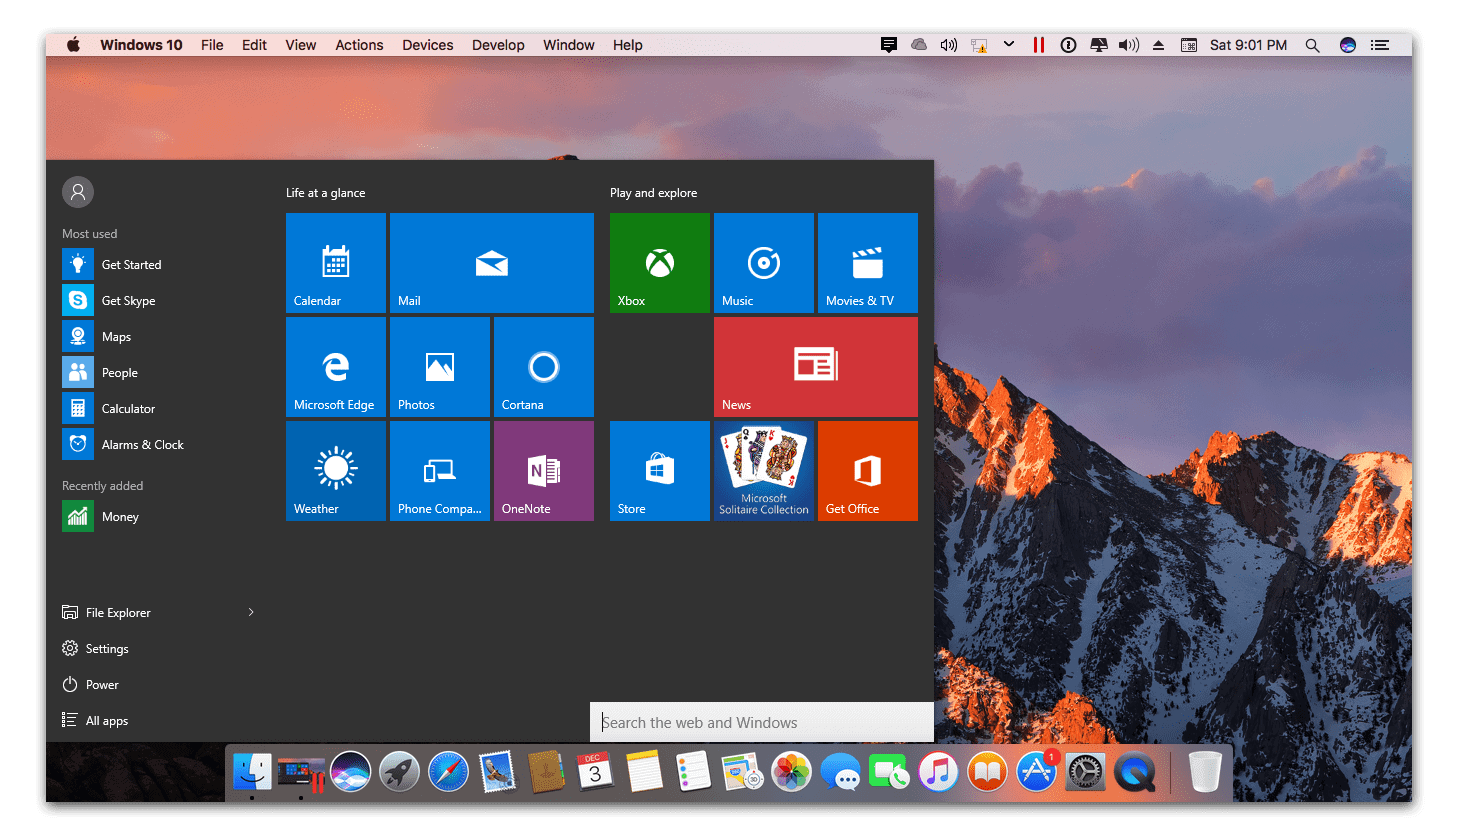 Windows 10 on macOS Sierra